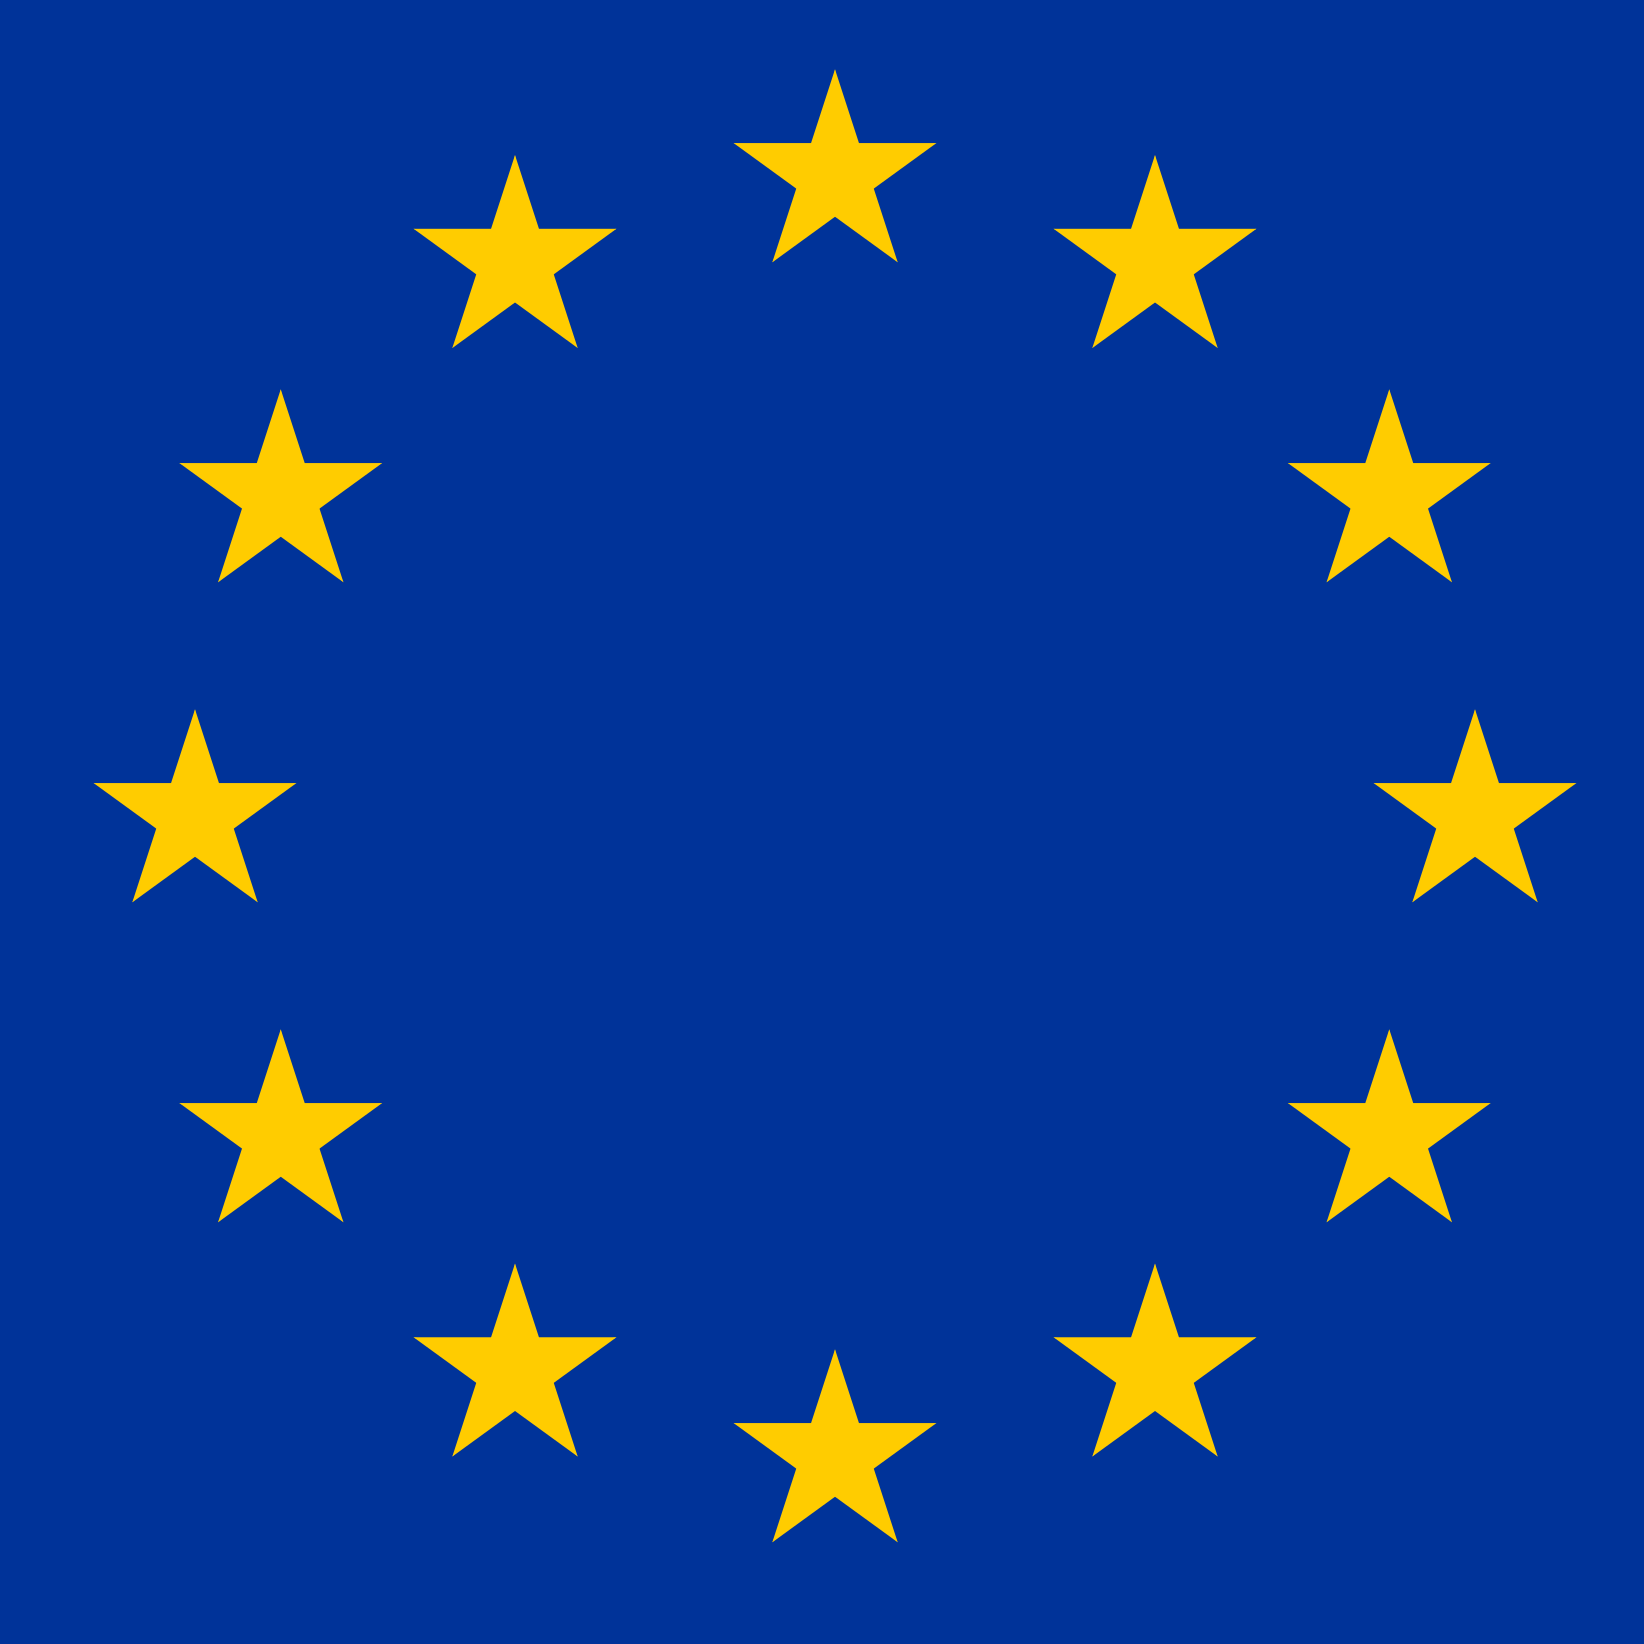 Europe Flags Quiz